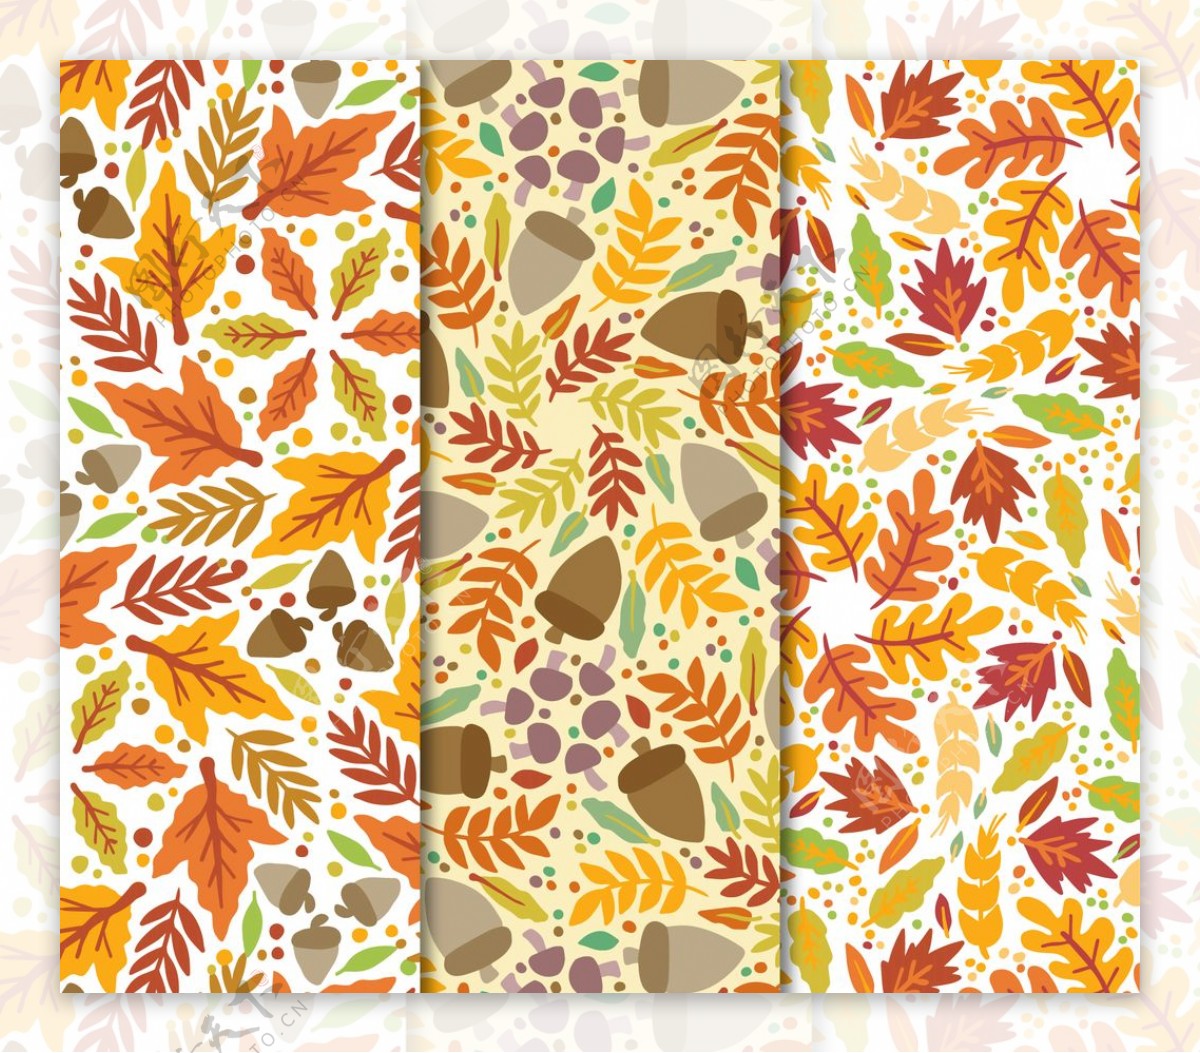 手工绘制的秋叶装饰图案